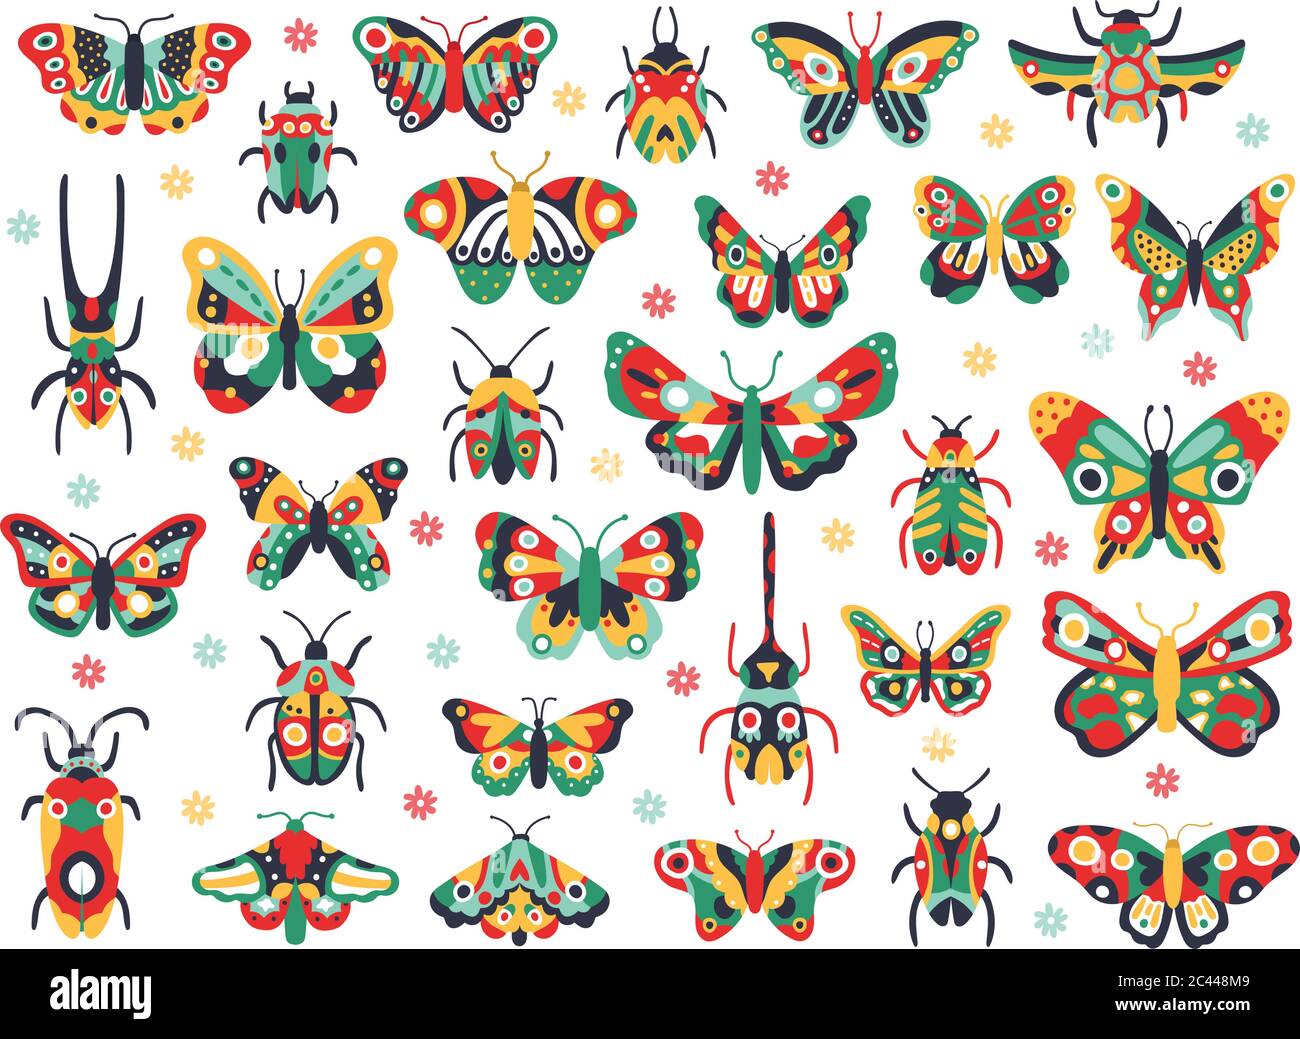 Insectes mignons dessinés à la main. Doodle volant papillon et coléoptère, insectes de printemps colorés. Dessin papillons et bugs illustration vecteur icônes ensemble Illustration de Vecteur